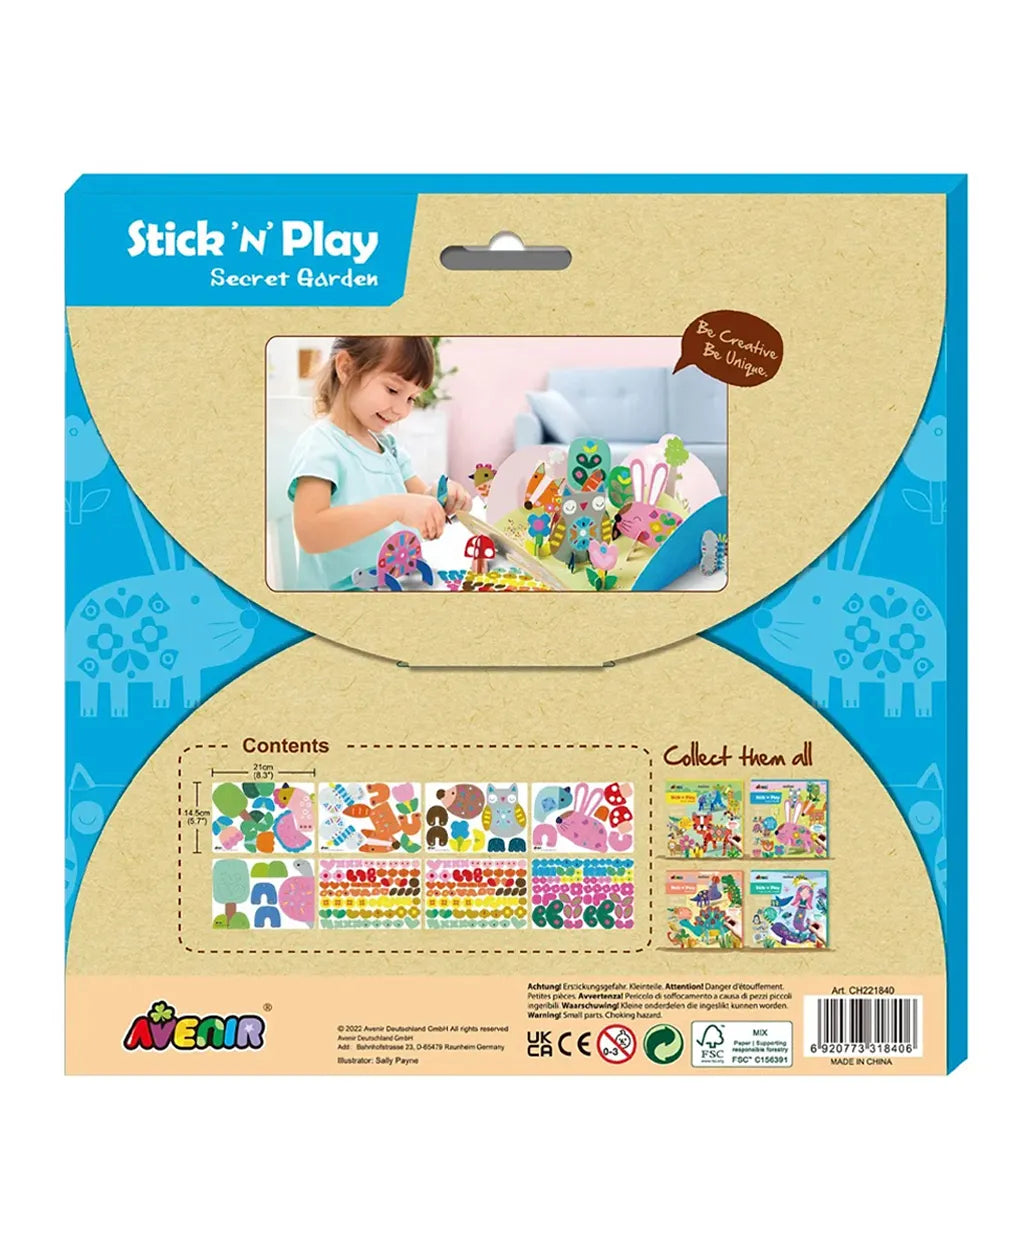 Avenir Stick 'N Play Series Kit - Secret Garden - Laadlee